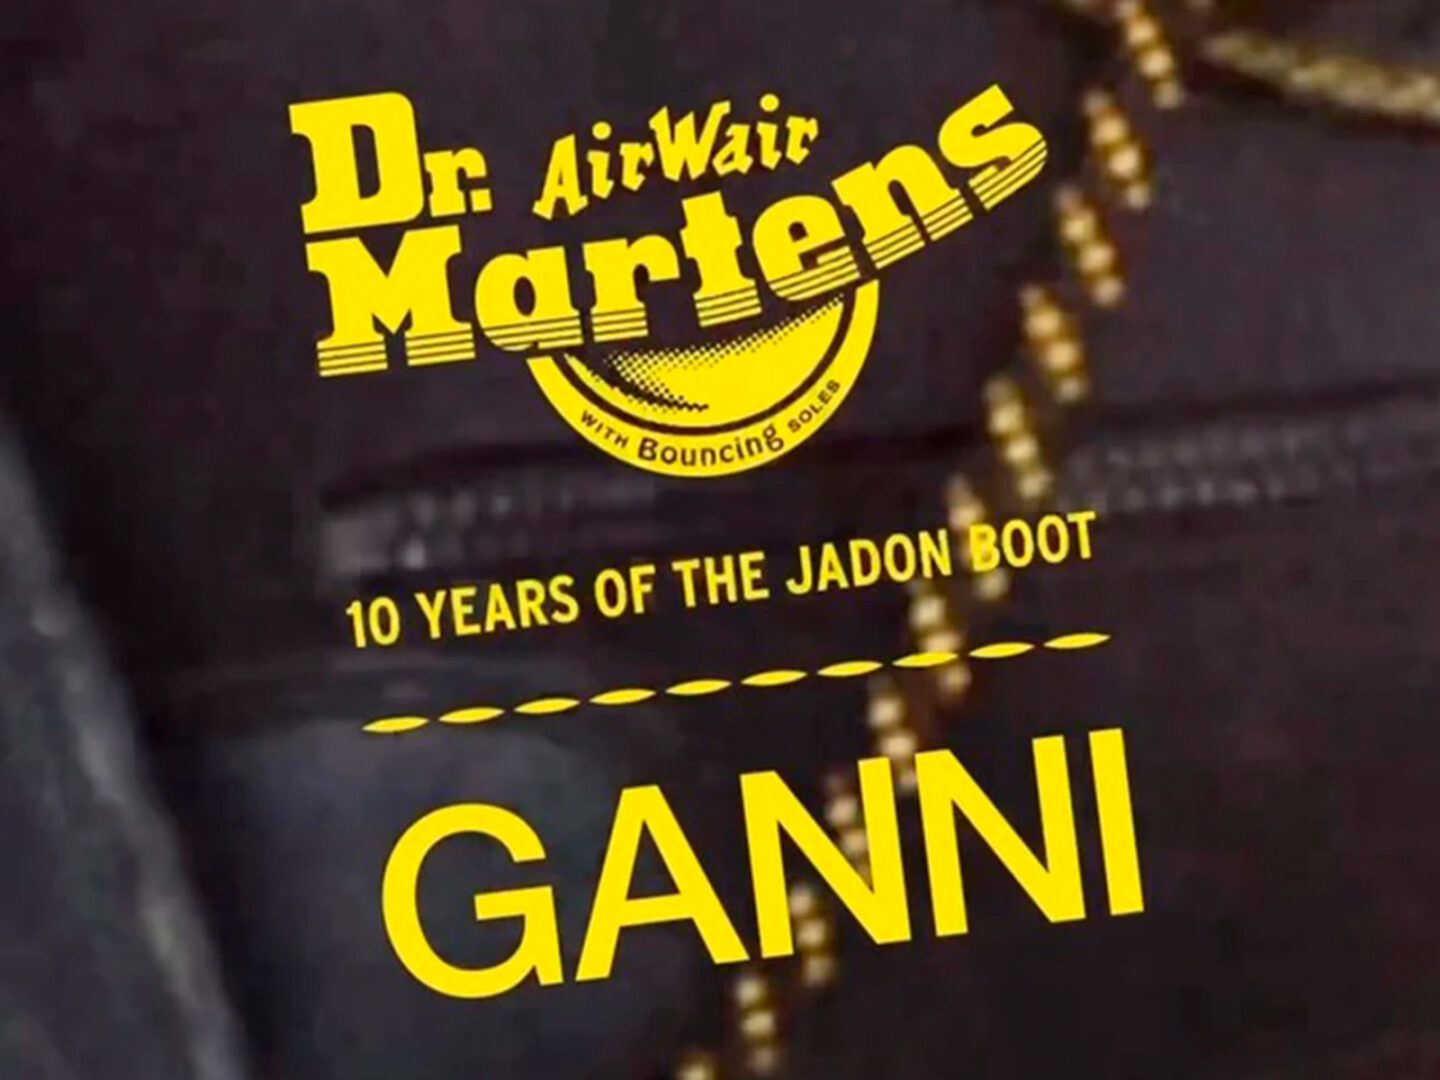 Dr. Martens y GANNI conmemoran los 10 años de la bota Jadon